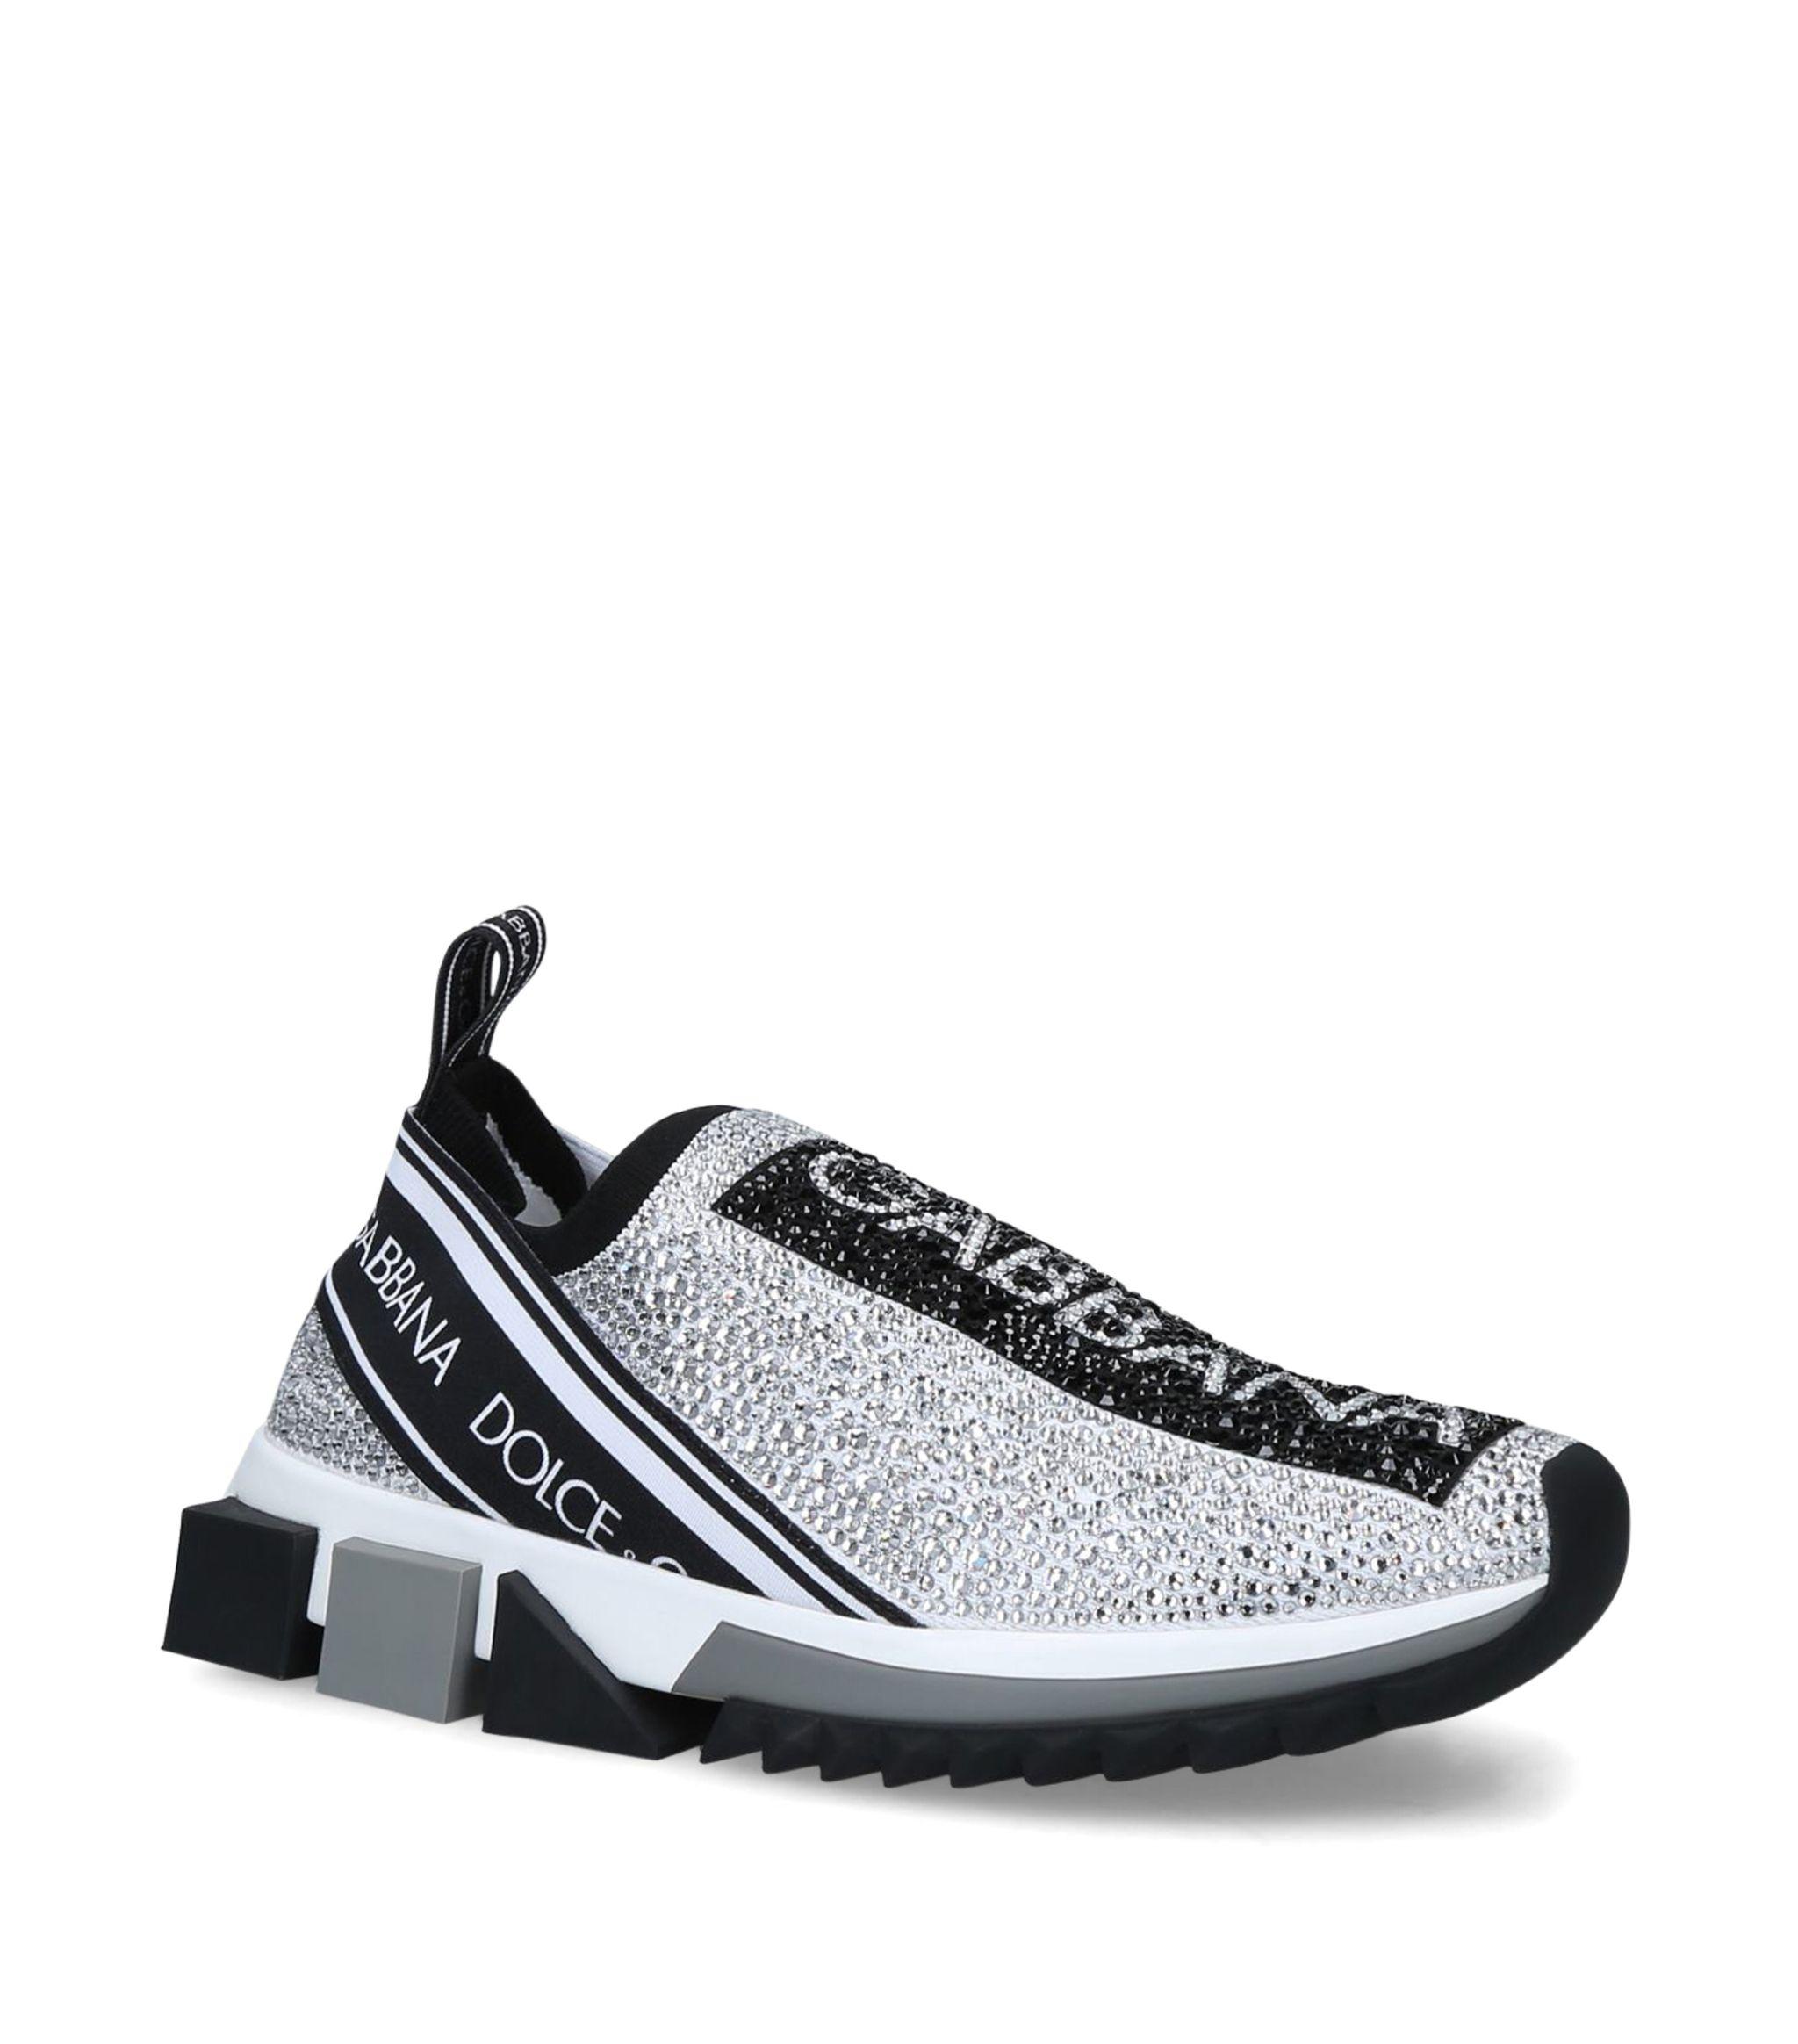 Sneaker Sorrento Sneakers Sorrento con cristalli termostrass male 39 Dolce & Gabbana Uomo Scarpe Sneakers Sneakers con glitter 